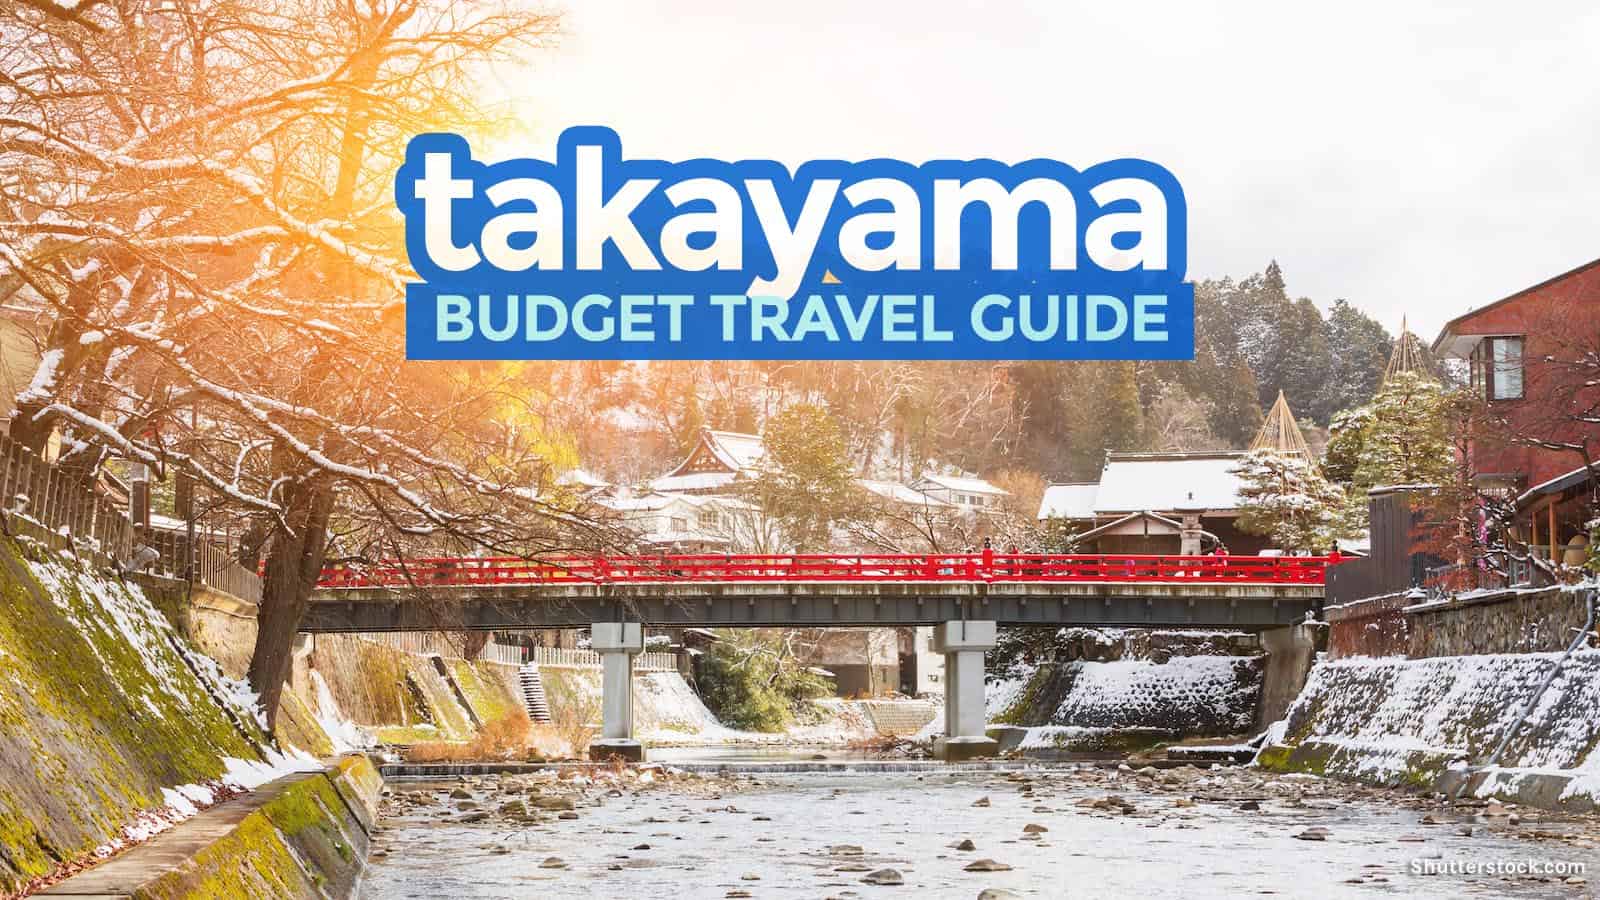 高山旅游指南:预算行程和要做的事情